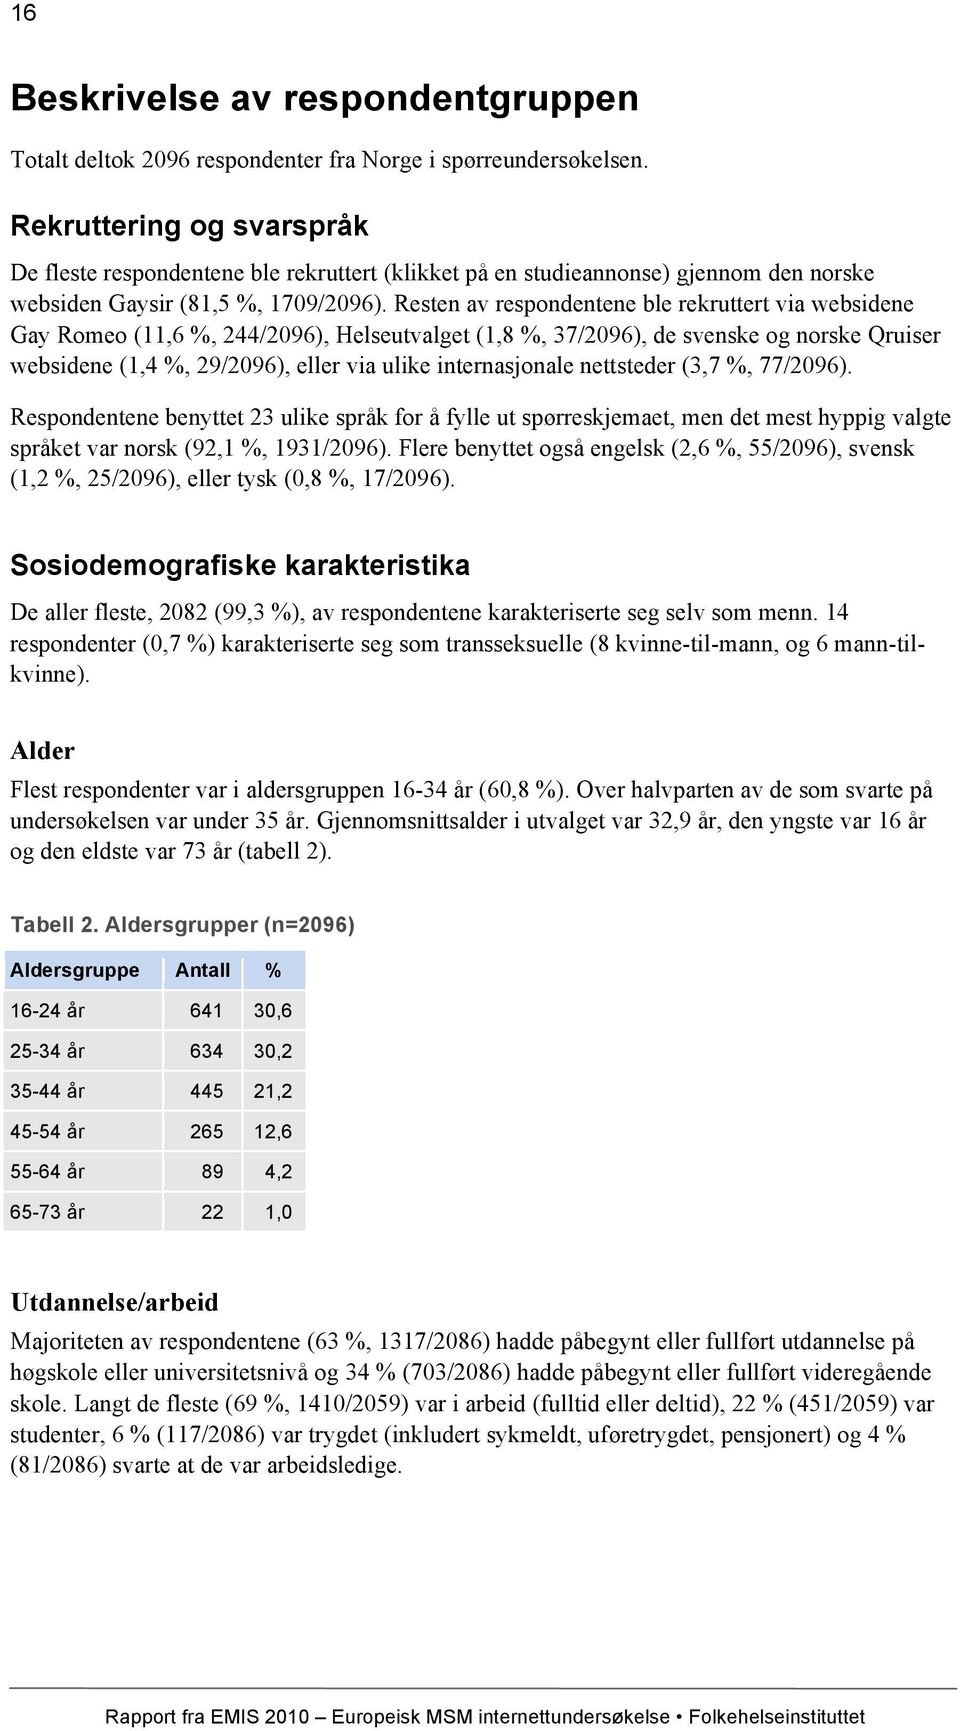 Resten av respondentene ble rekruttert via websidene Gay Romeo (11,6 %, 244/2096), Helseutvalget (1,8 %, 37/2096), de svenske og norske Qruiser websidene (1,4 %, 29/2096), eller via ulike